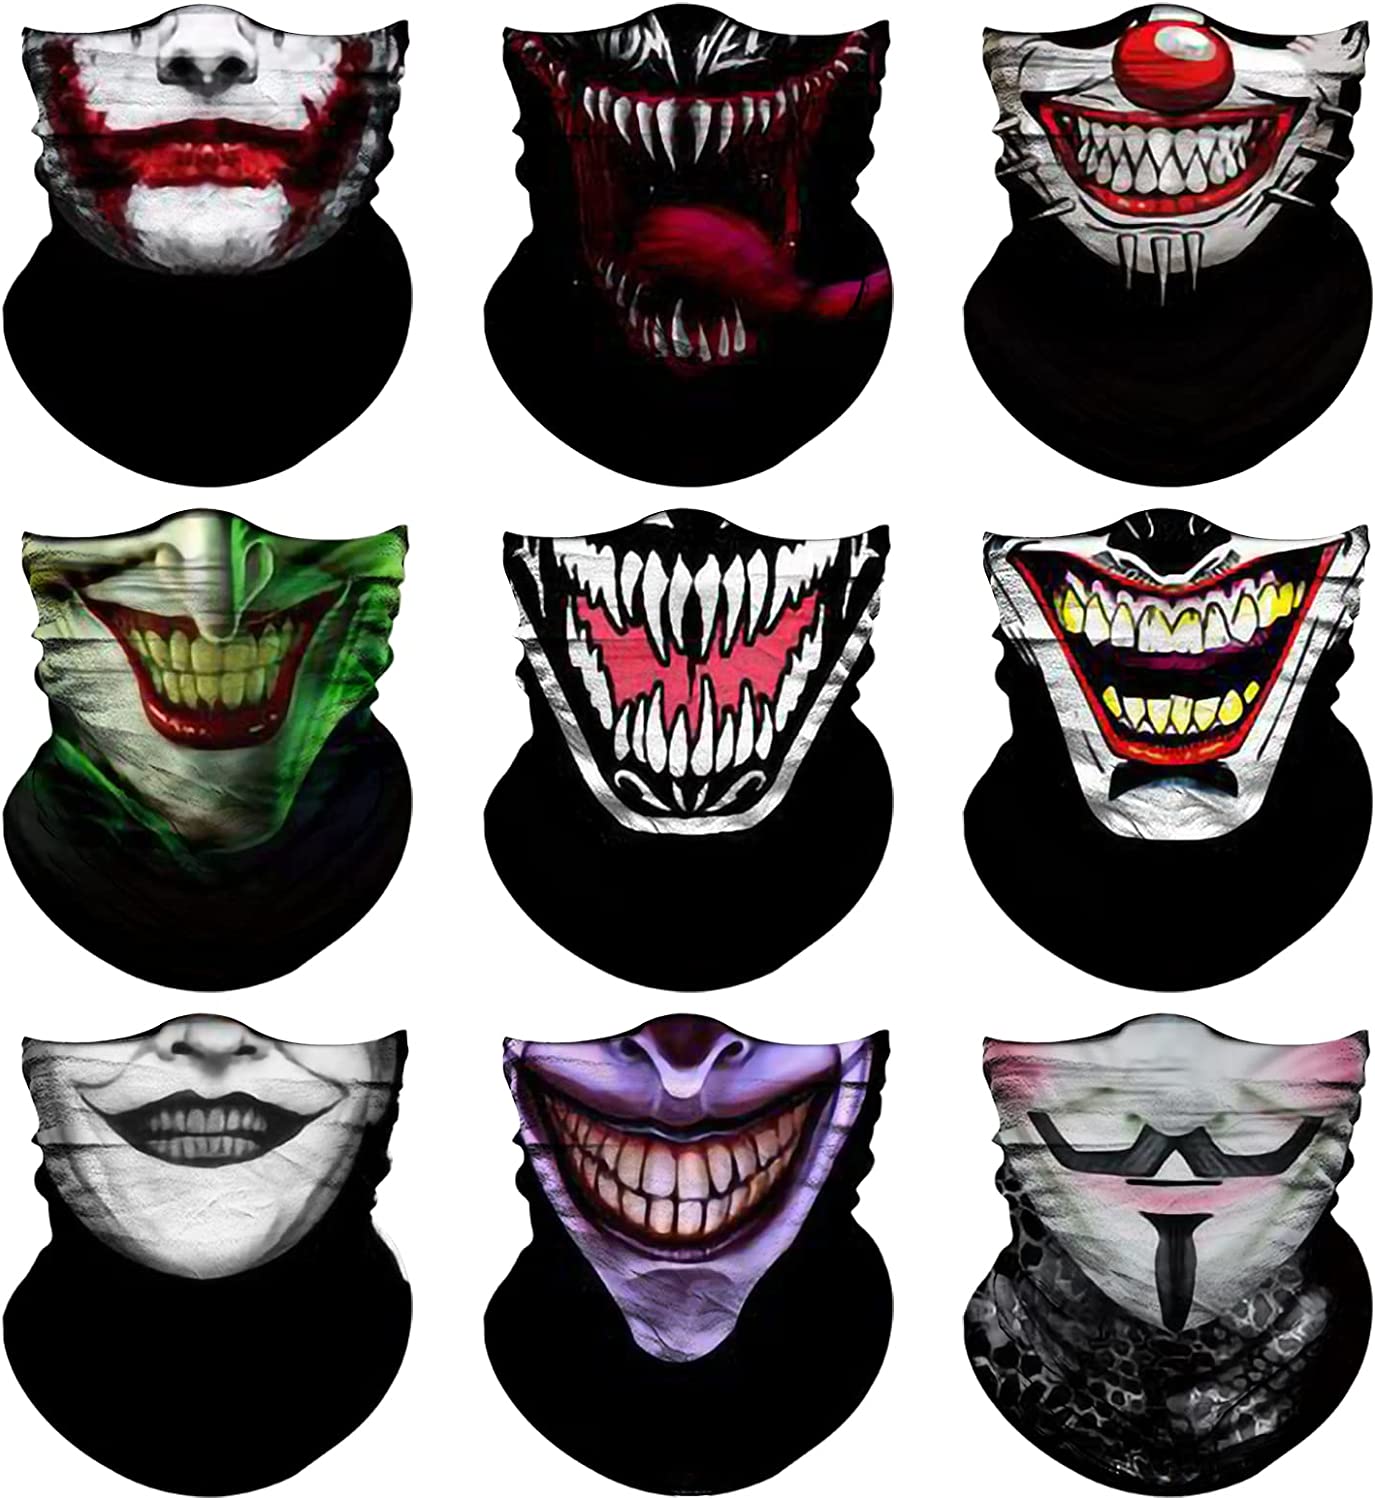 Joker Face Mask WholeSale - Price List, Bulk Buy at